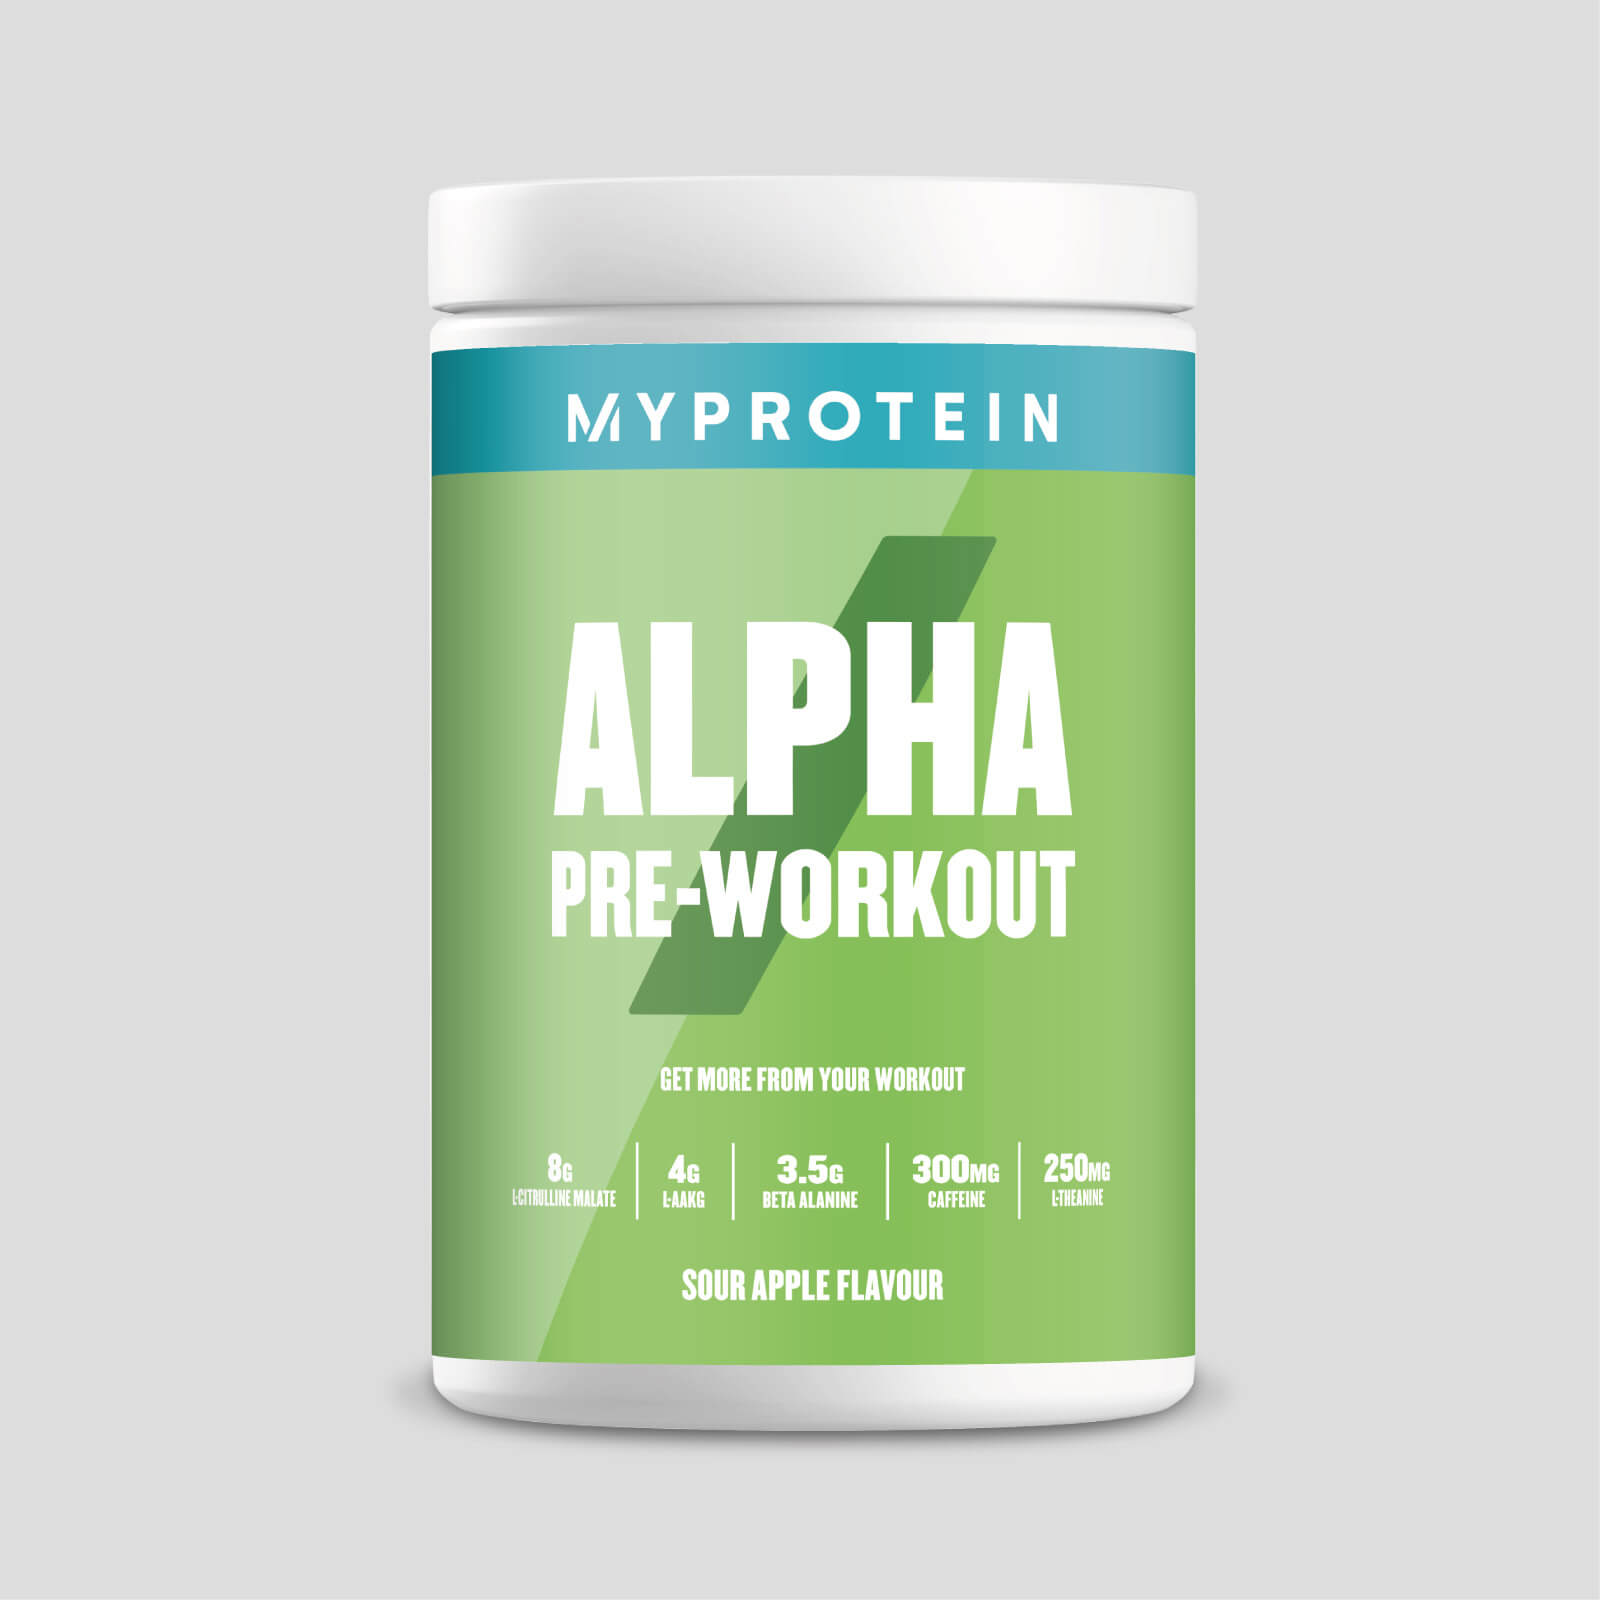 Myprotein Alpha Pre-Workout - 600g - Surt eple